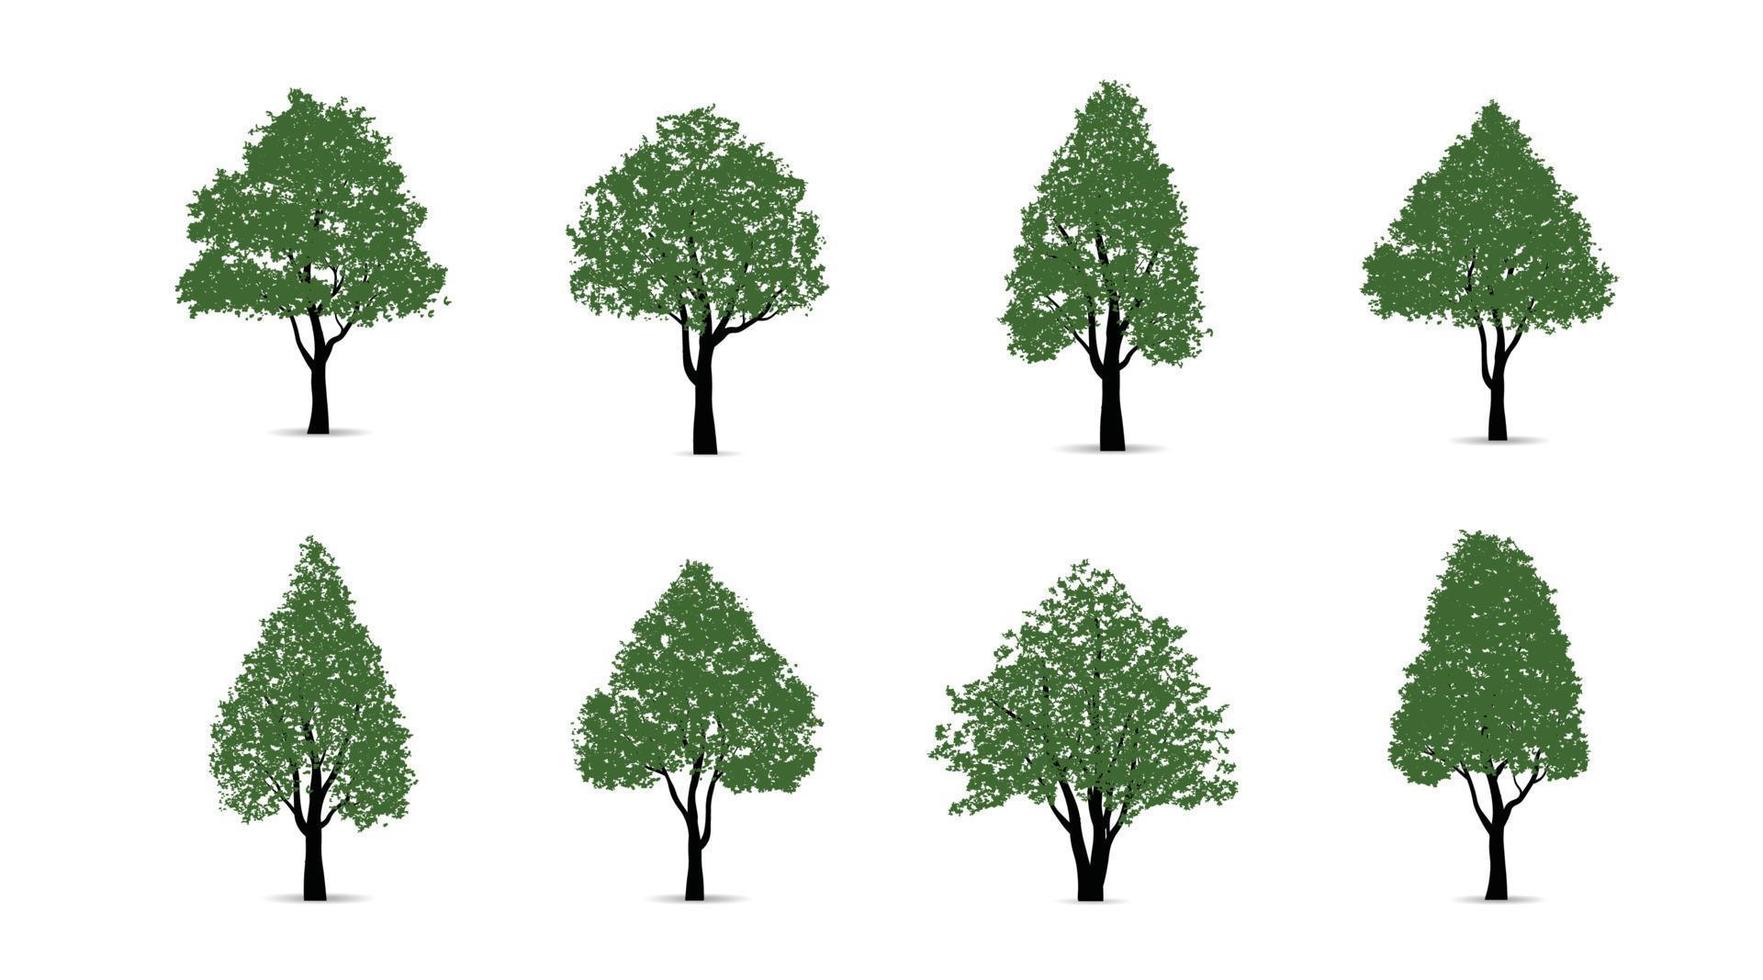 uppsättning av grön träd isolerat på vit bakgrund för landskap design och arkitektonisk kompositioner med bakgrunder. vektor illustration.